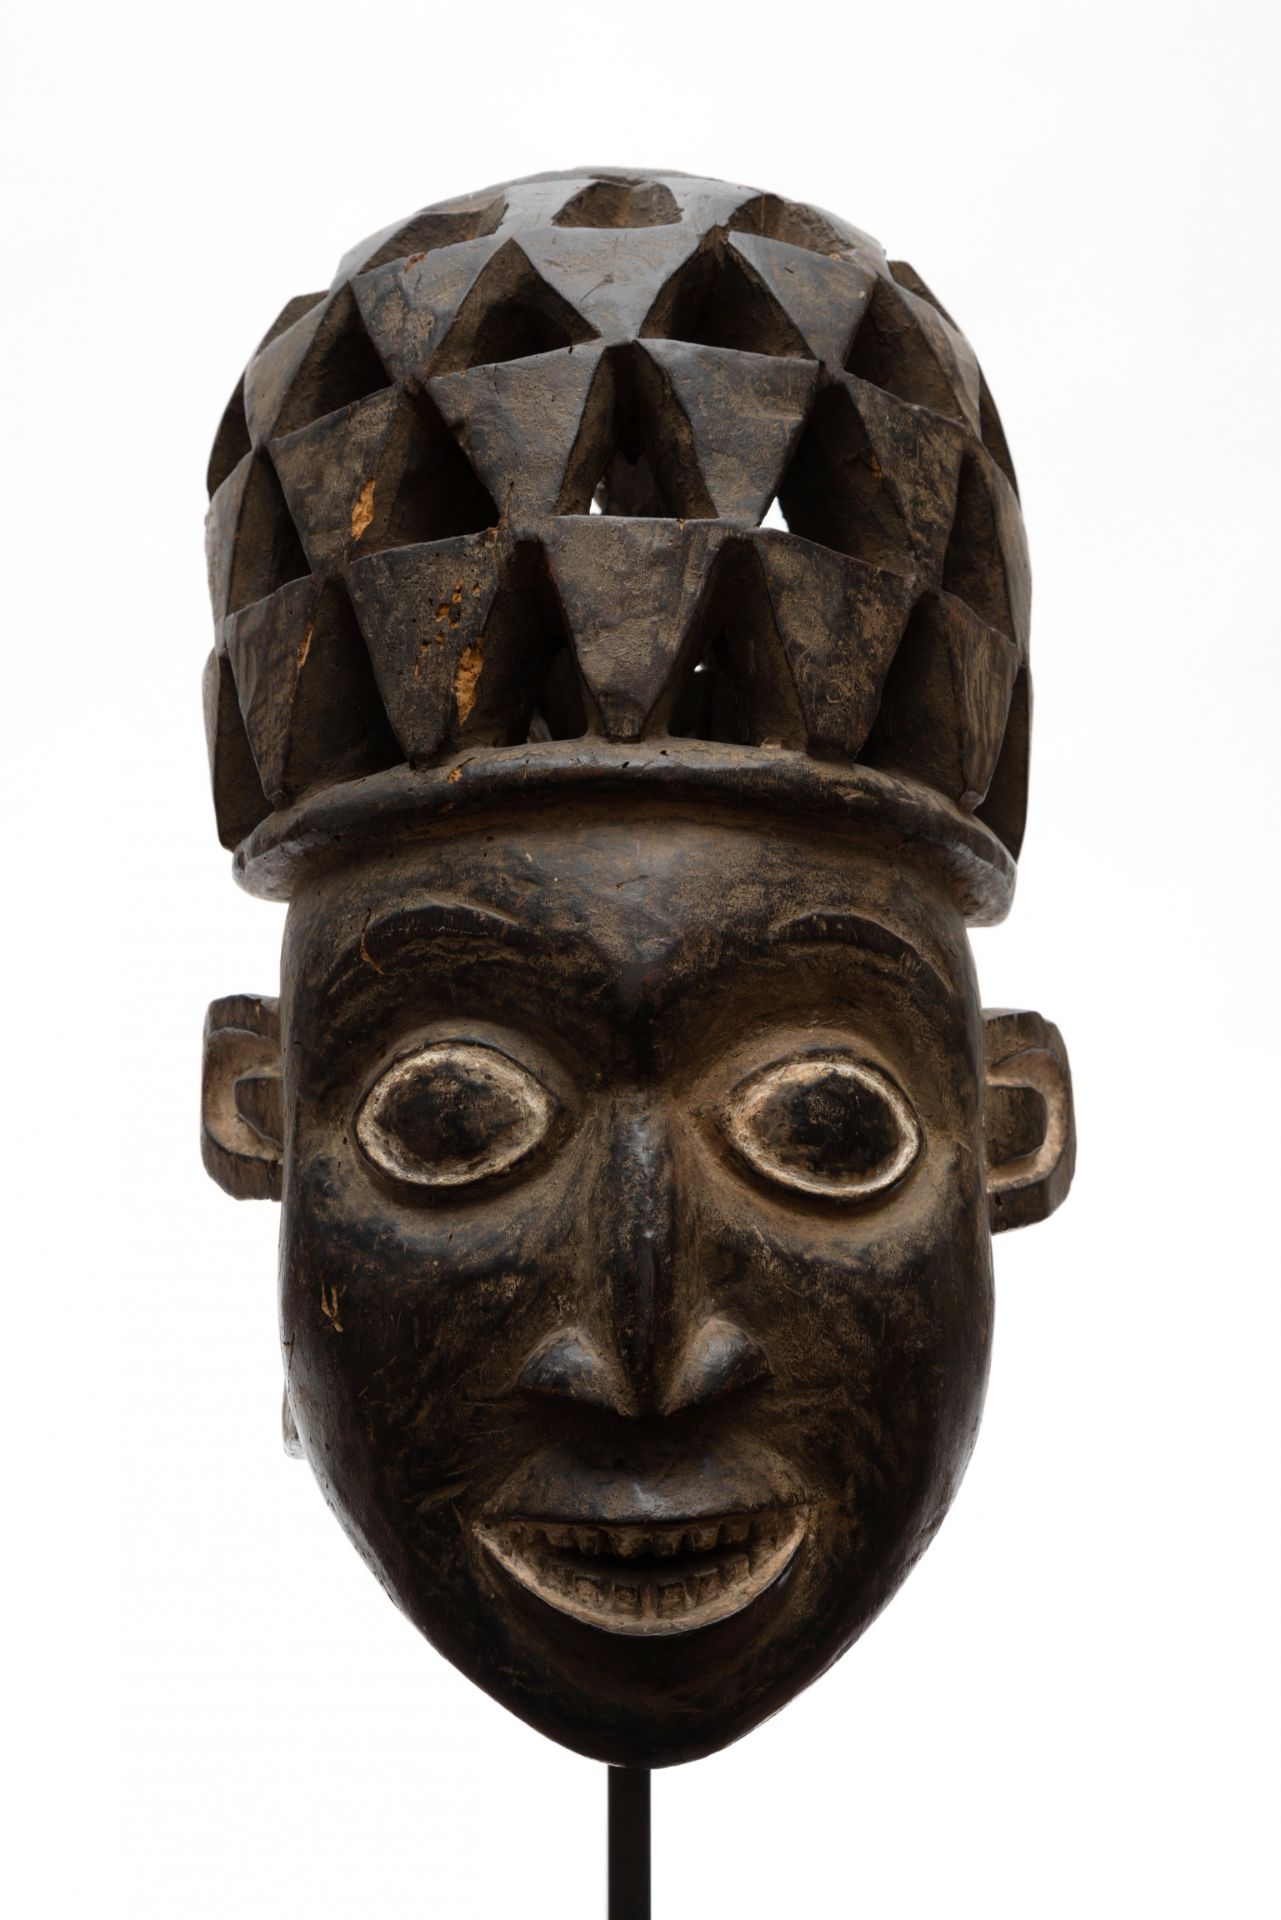 Cameroon, Grasslands, Bamileke, helmet mask, - Image 3 of 8